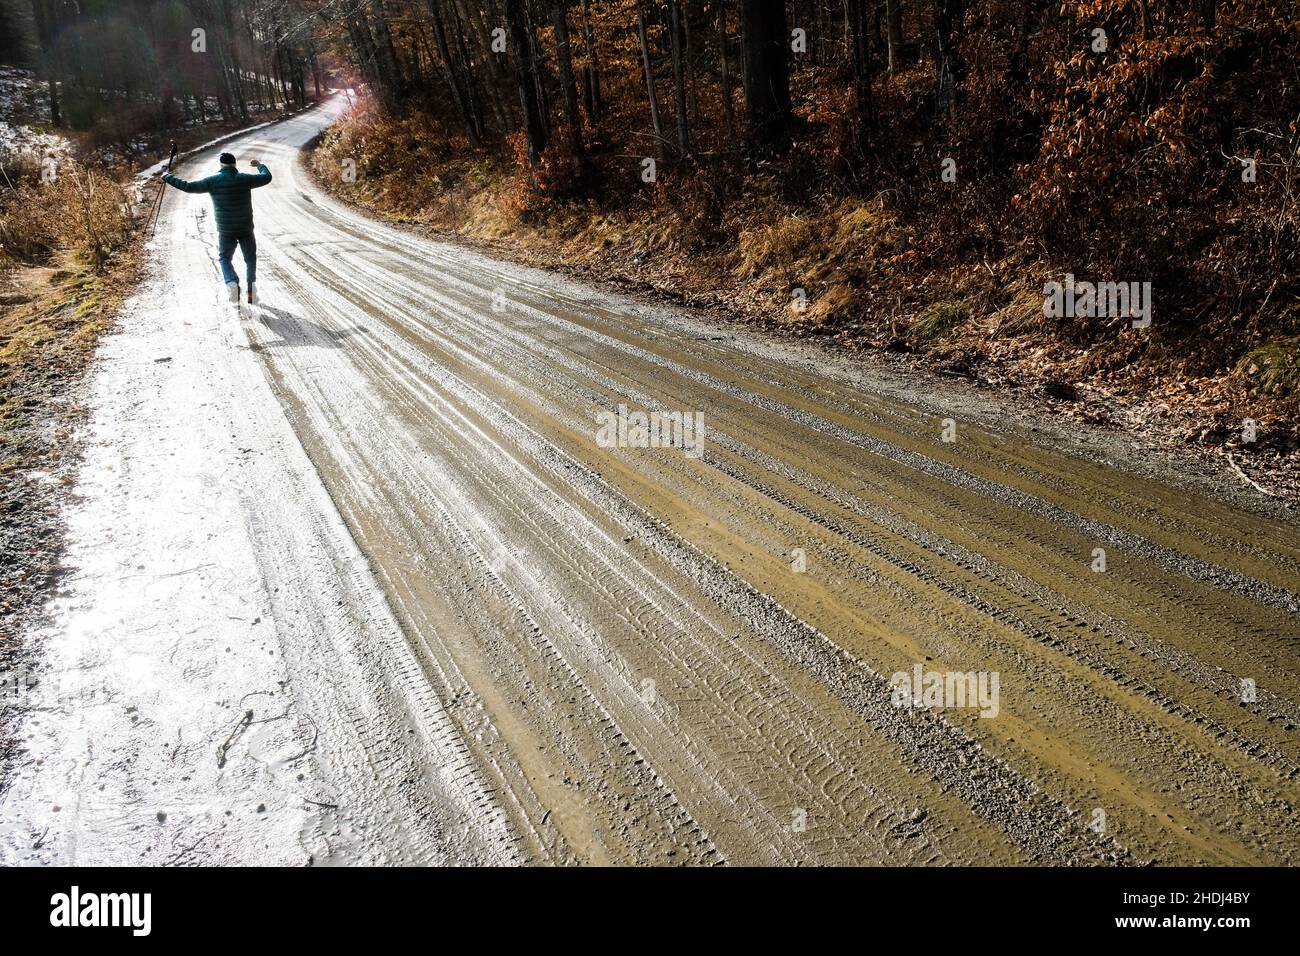 Un vieux solitaire marche le long d'une route de terre rurale dans l'est de Montpelier, VT, Nouvelle-Angleterre, Etats-Unis. Banque D'Images